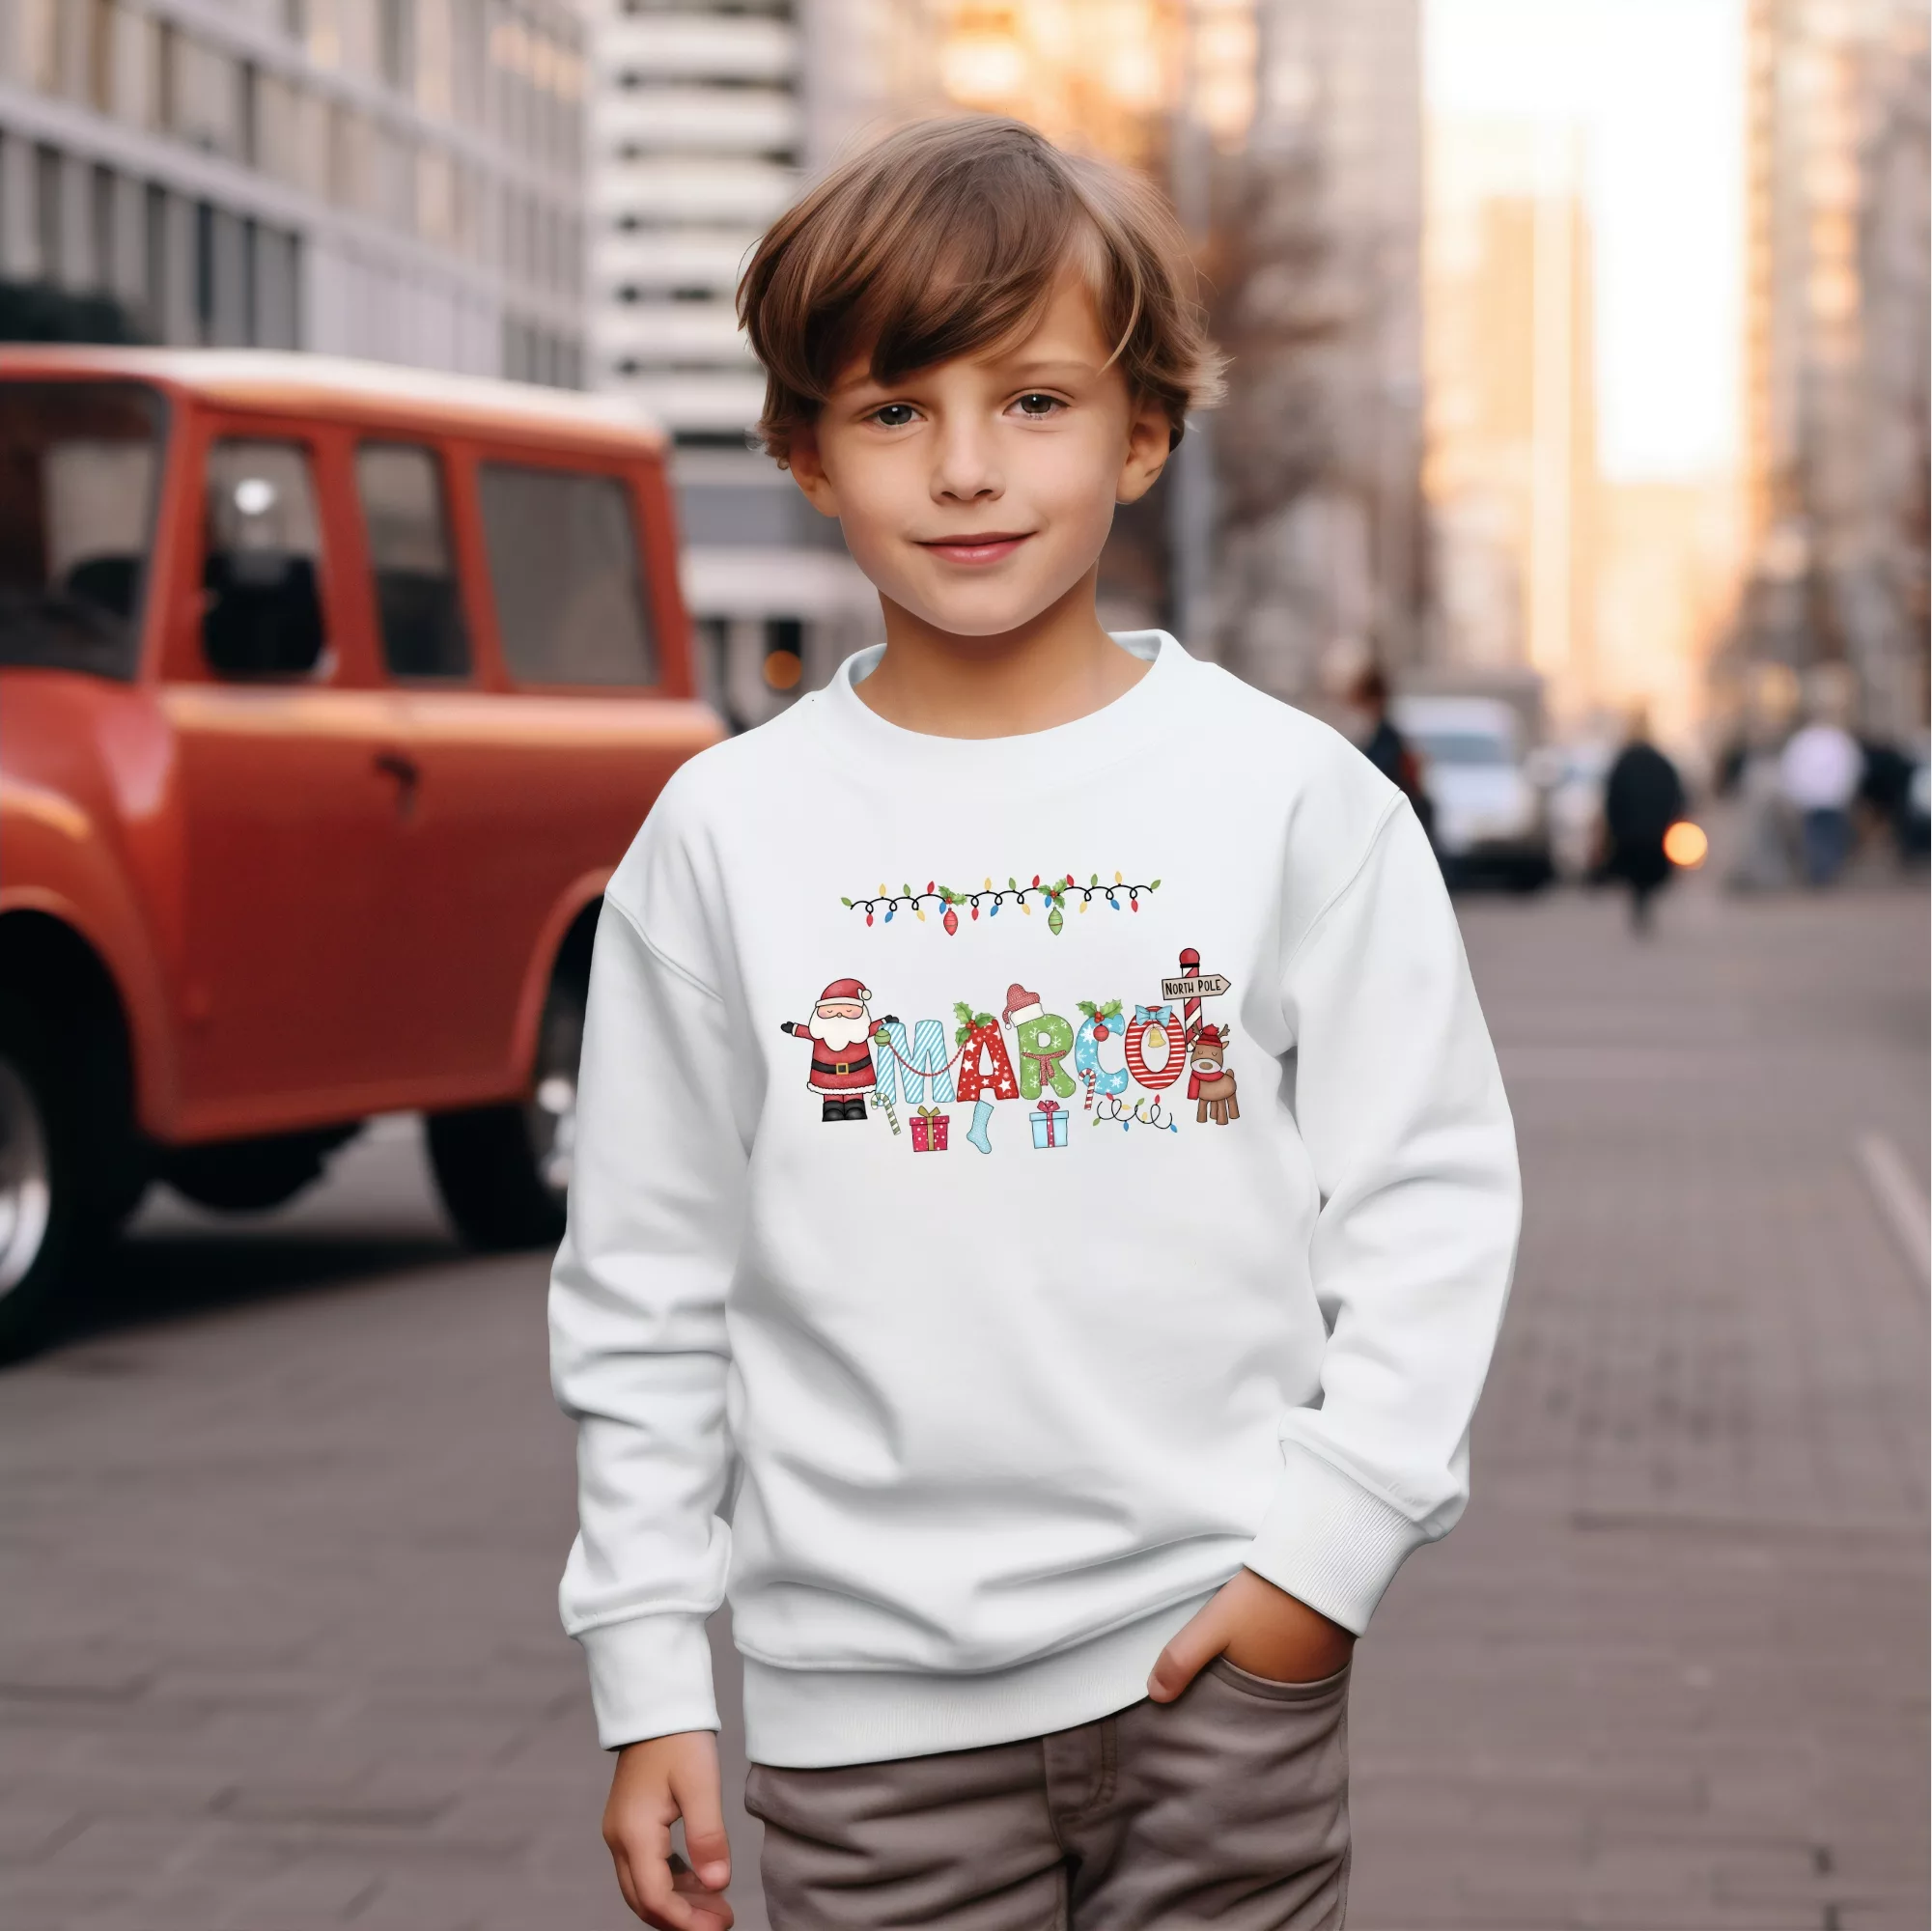 Christmas Sweatshirt For Kids, Personalized Sweatshirt